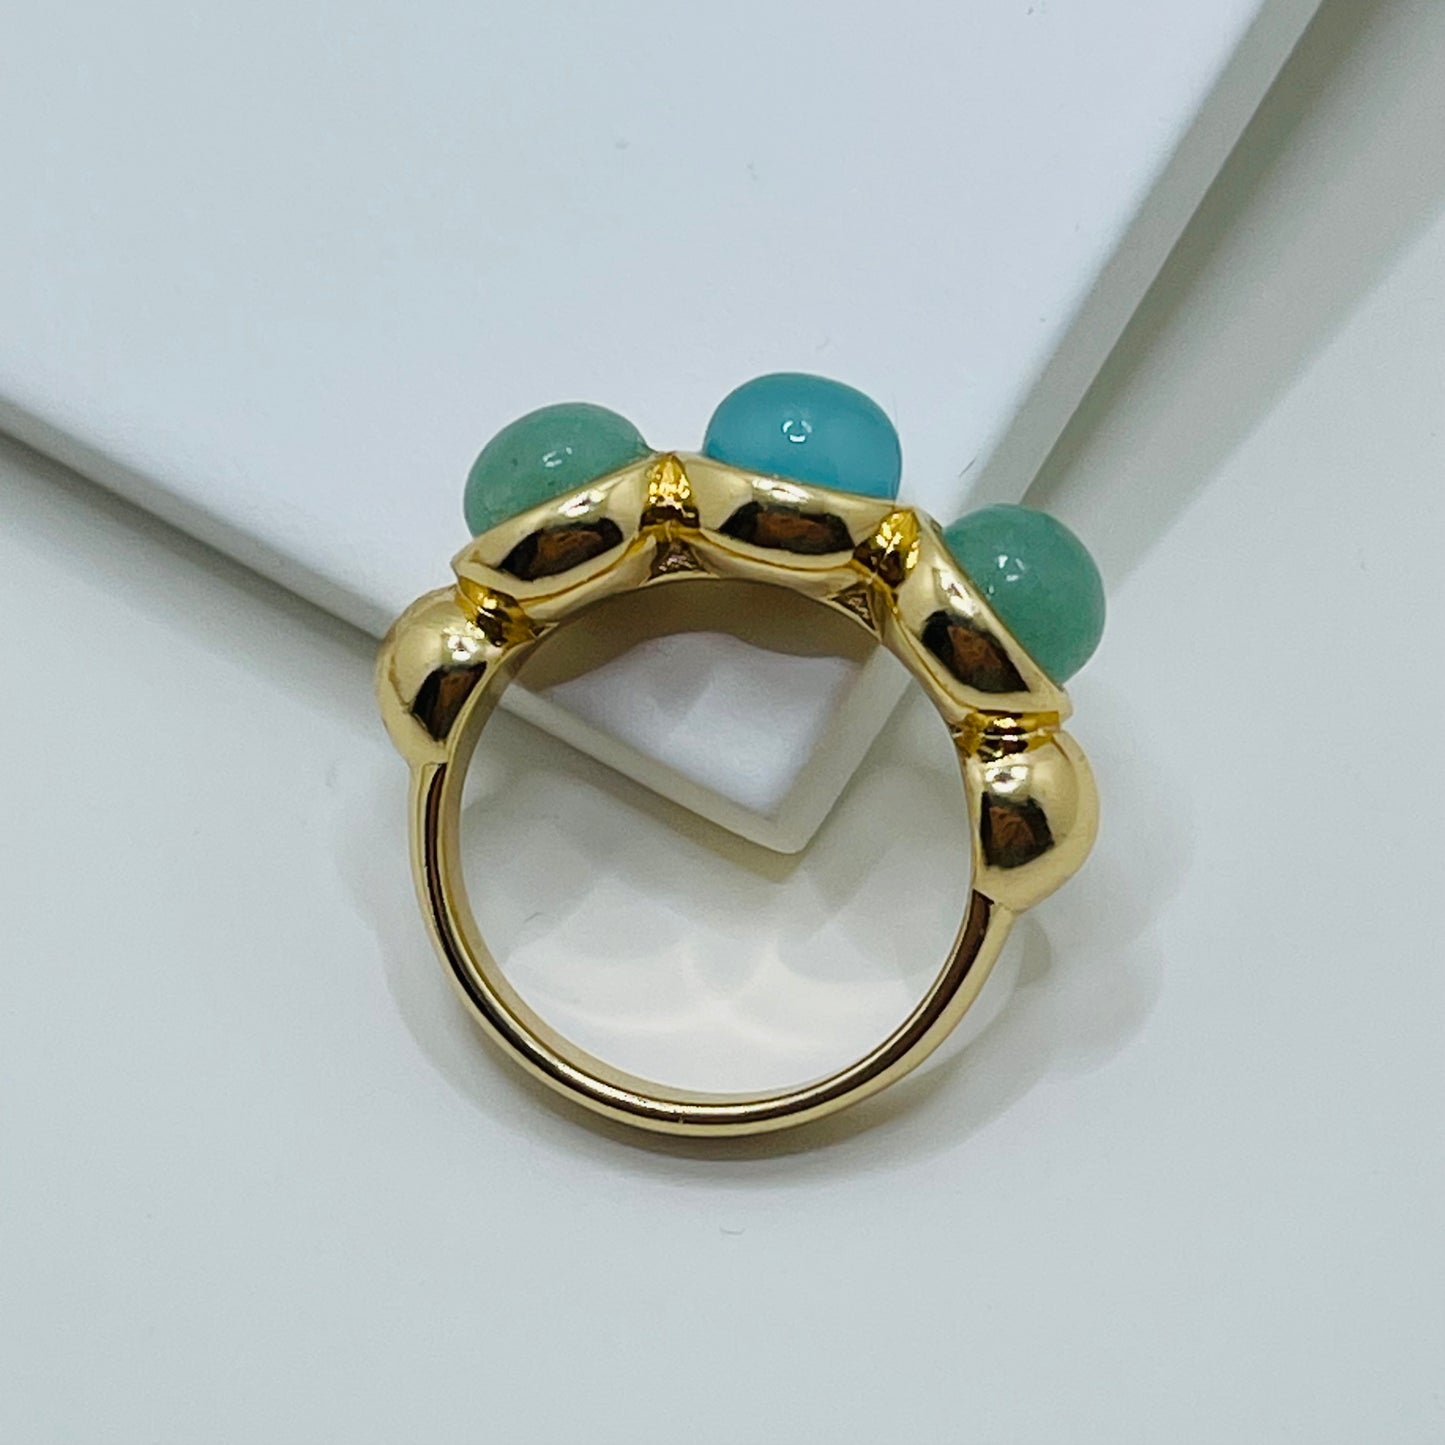 Green & Blue- Whisper Triple Gem Ring